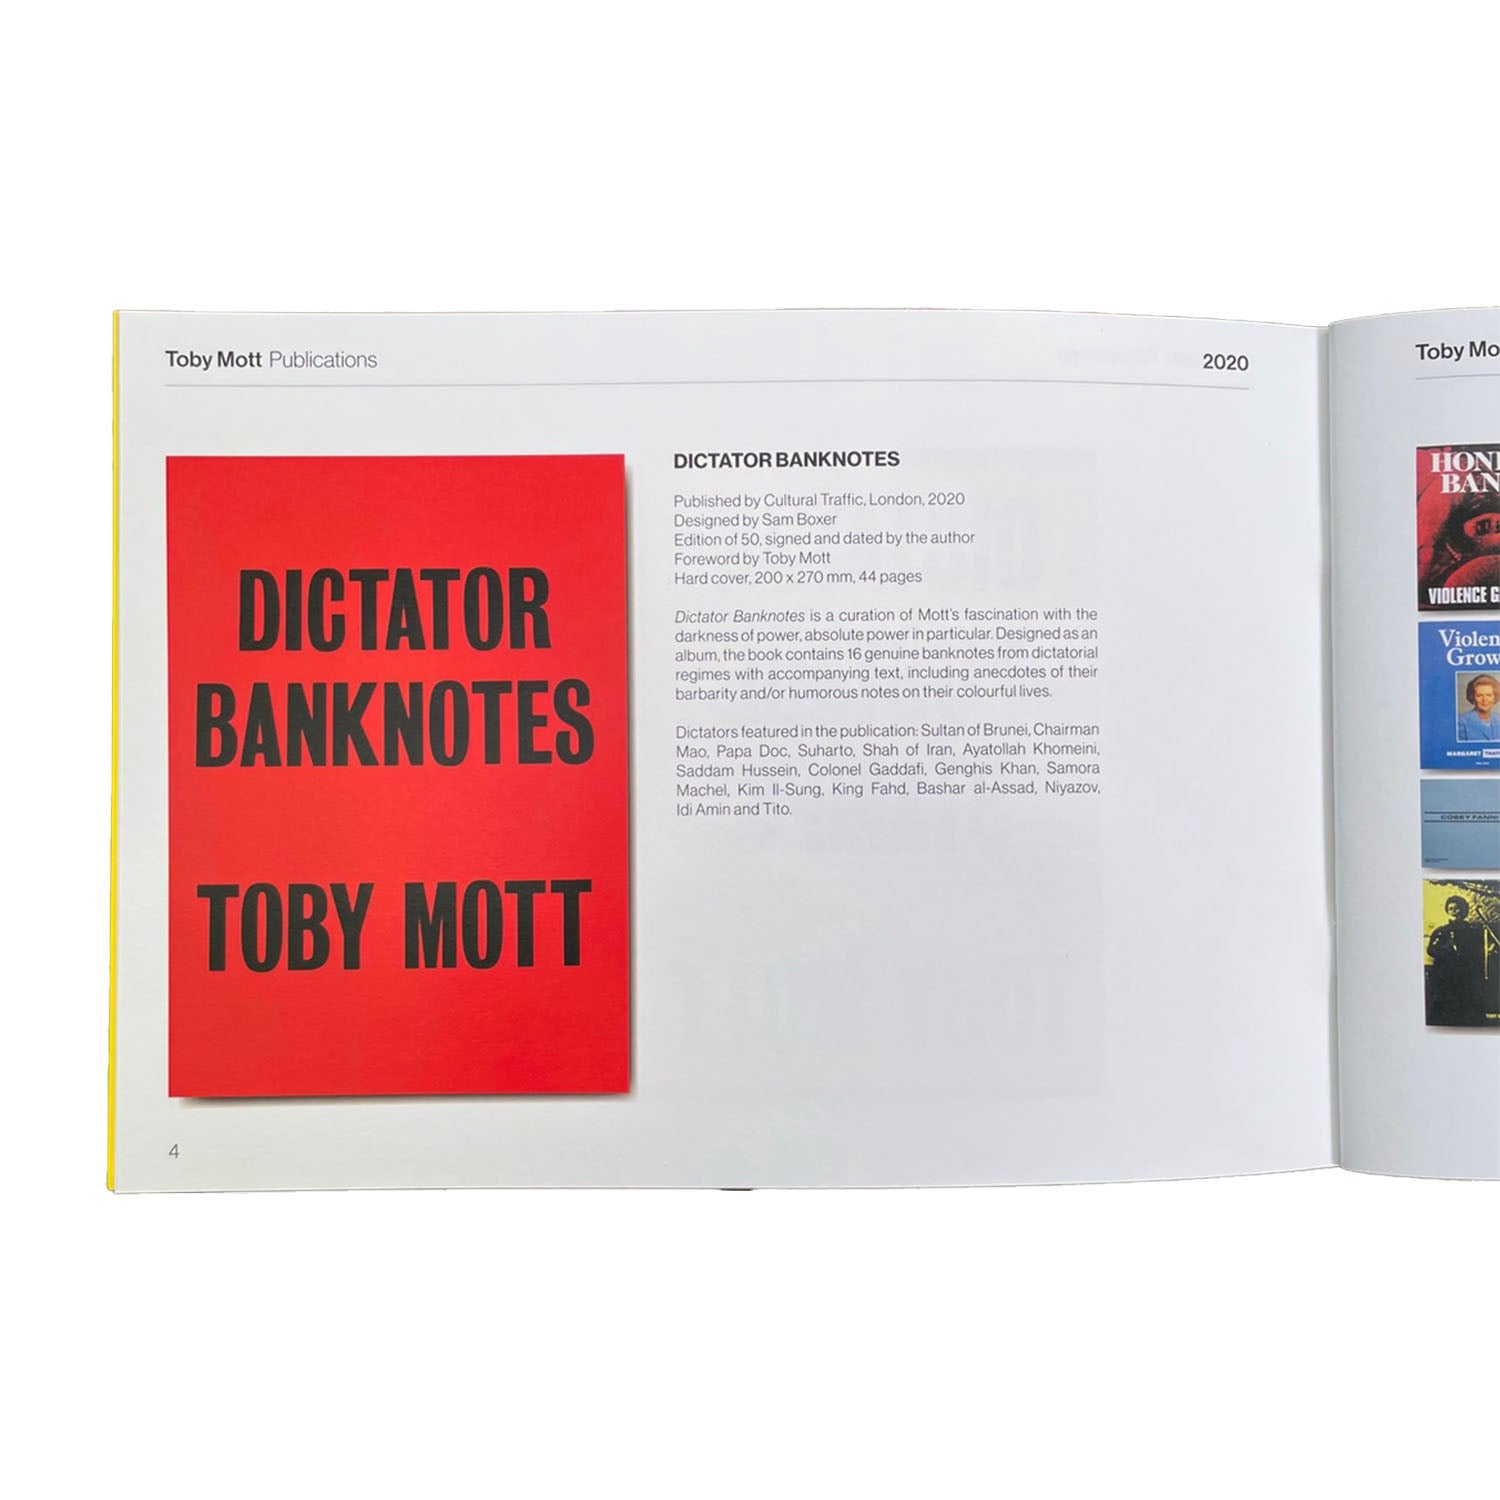 TOBY MOTT PUBLICATIONS 1996 - 2023